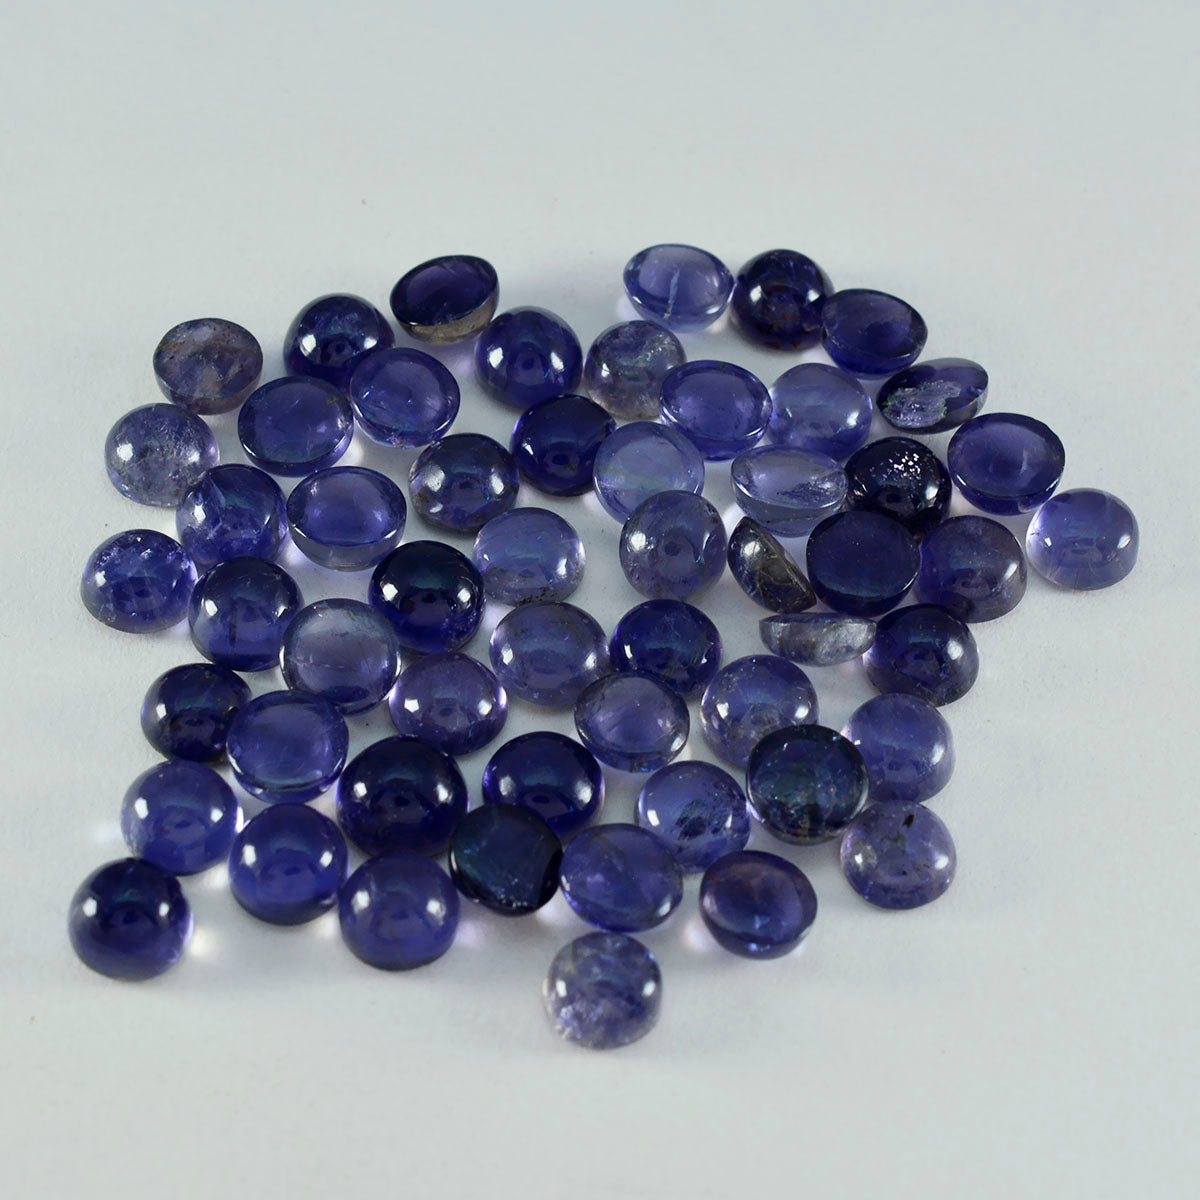 Riyogems 1 Stück blauer Iolith-Cabochon, 6 x 6 mm, runde Form, Edelstein in AAA-Qualität